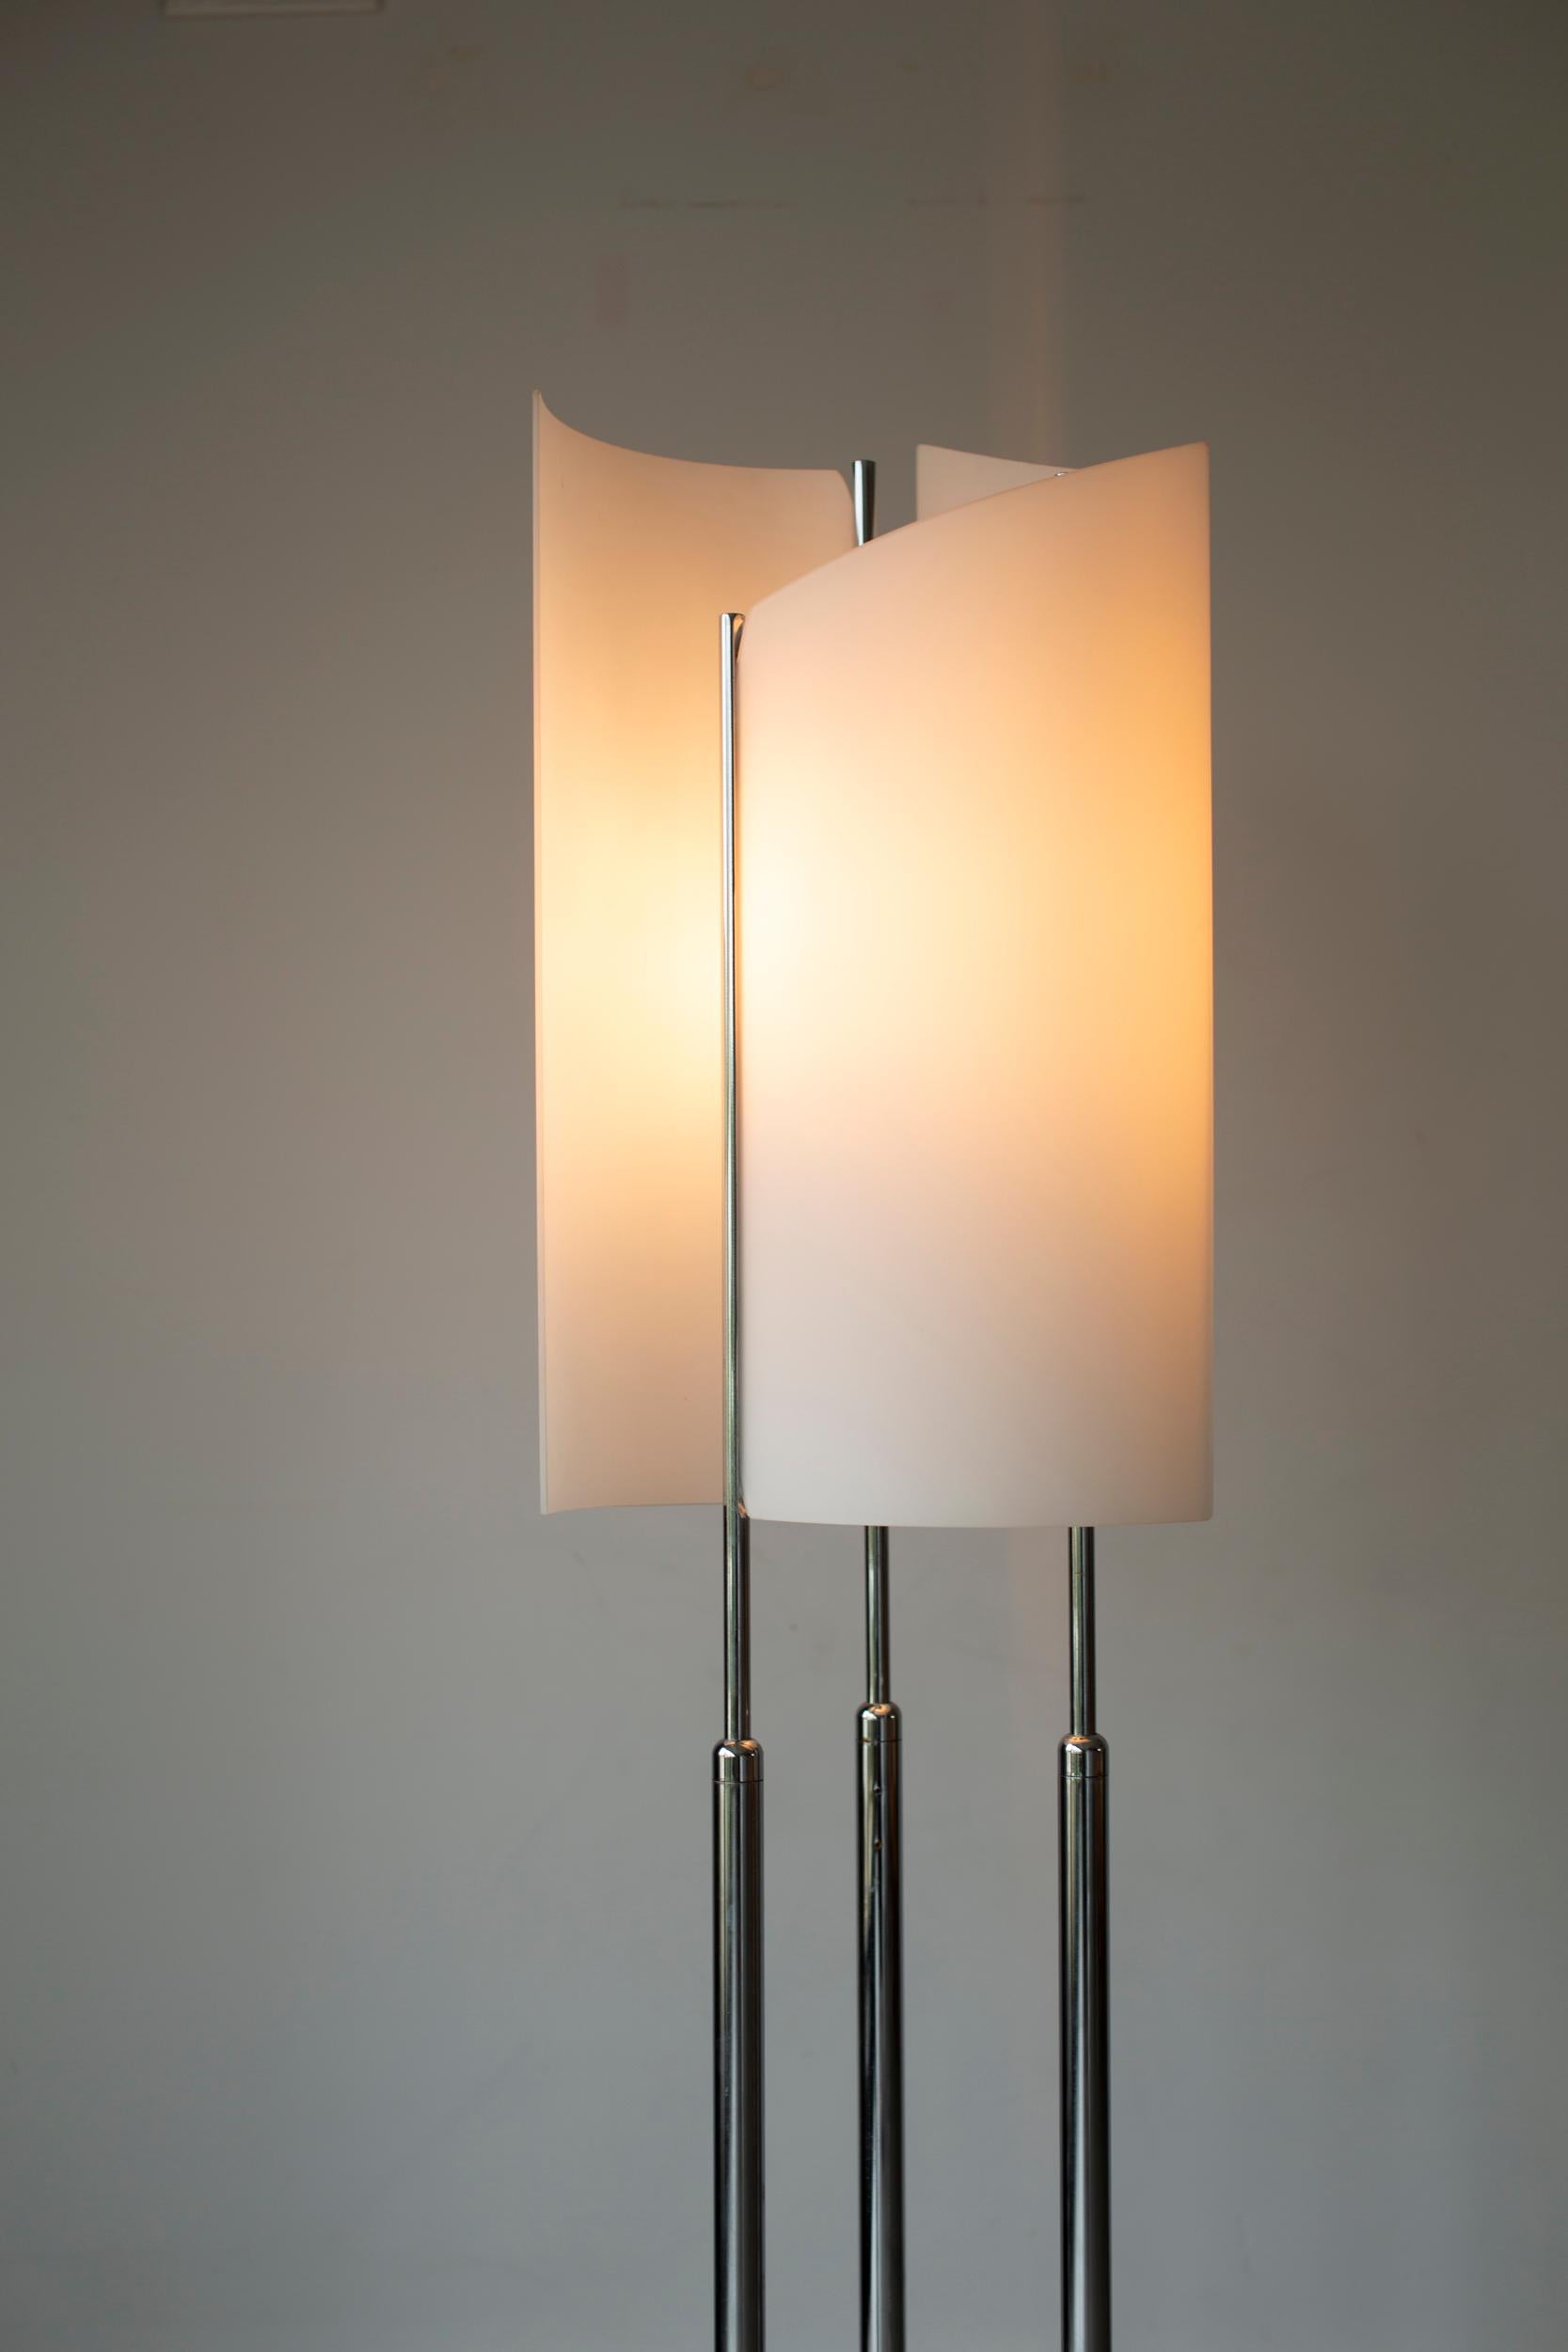 Illuminez votre espace avec le charme vintage du lampadaire Arianna de Bruno Gecchelin ! Cette lampe excentrique de style 70's sur un pied en marbre ne manquera pas d'ajouter une touche ludique à n'importe quelle pièce. Avec son design unique et sa